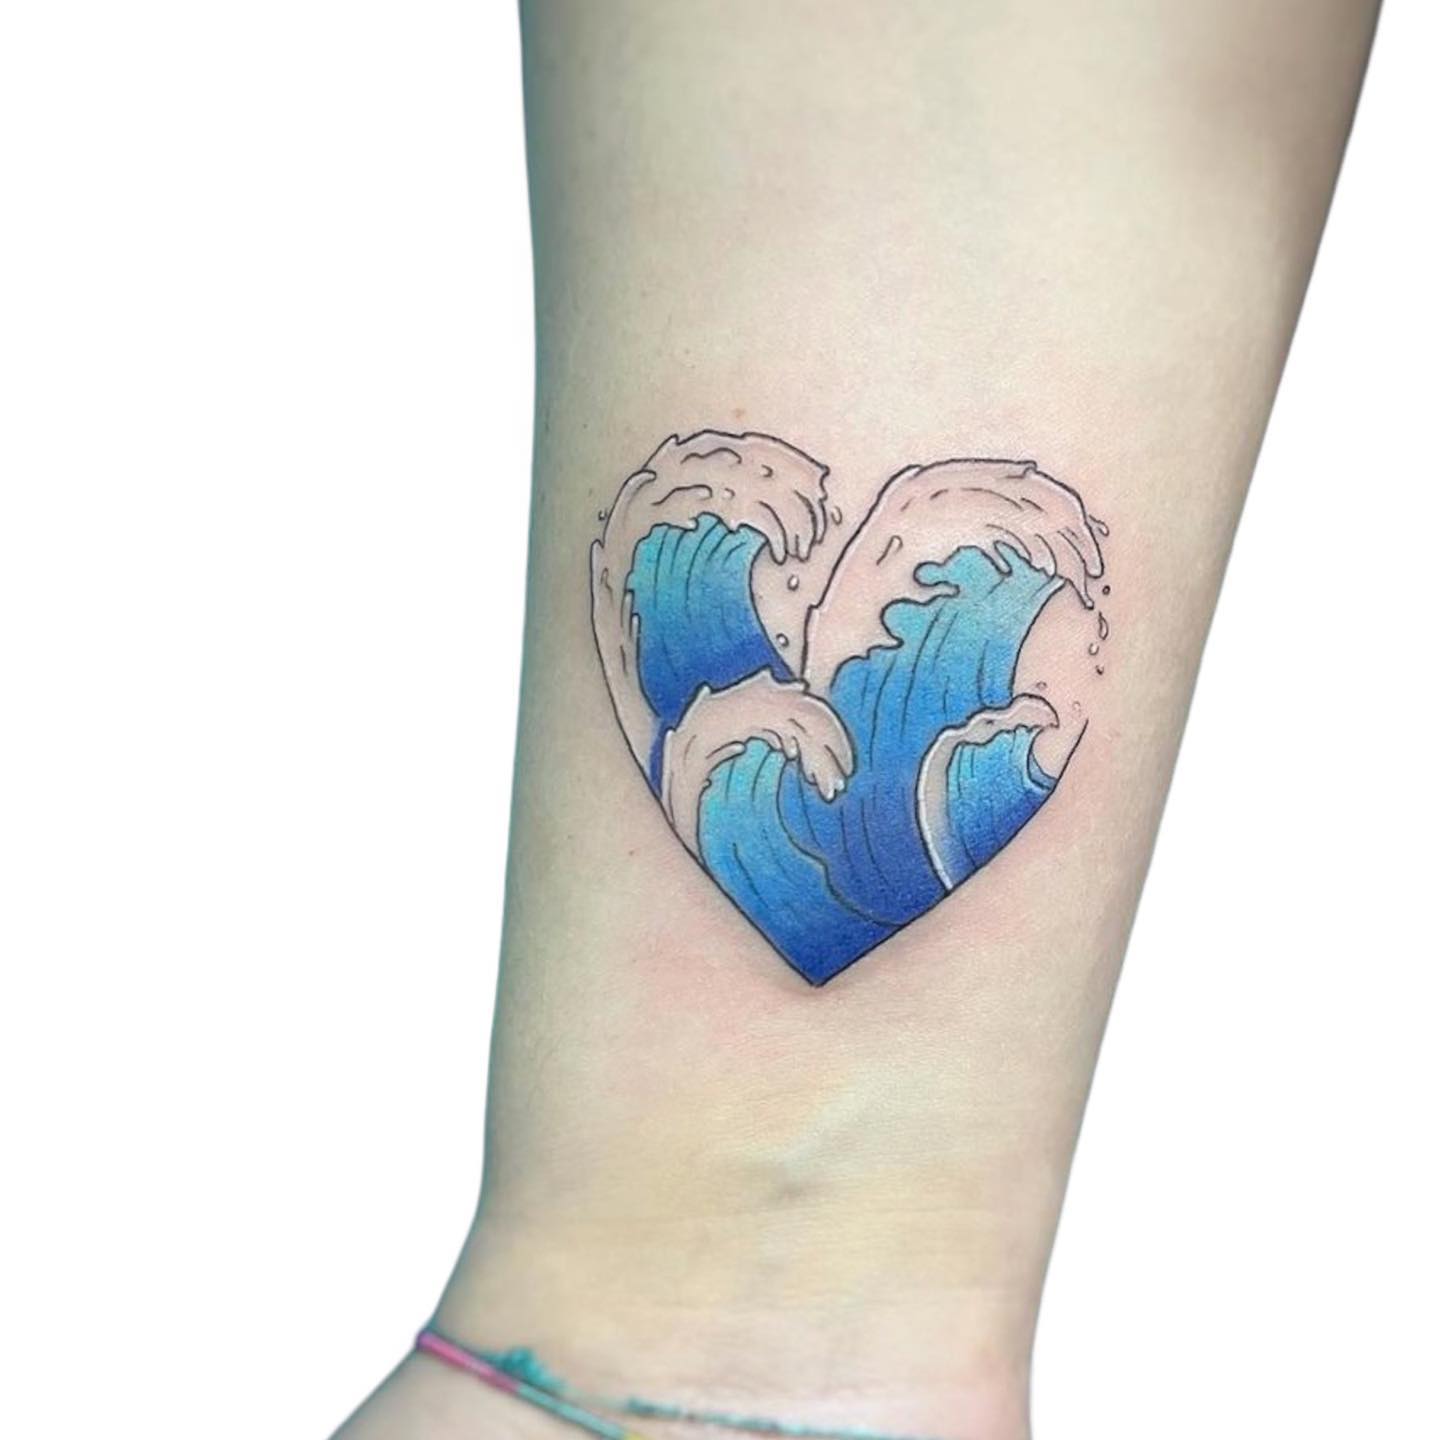 Blue waves tattoo by valyumtattoo